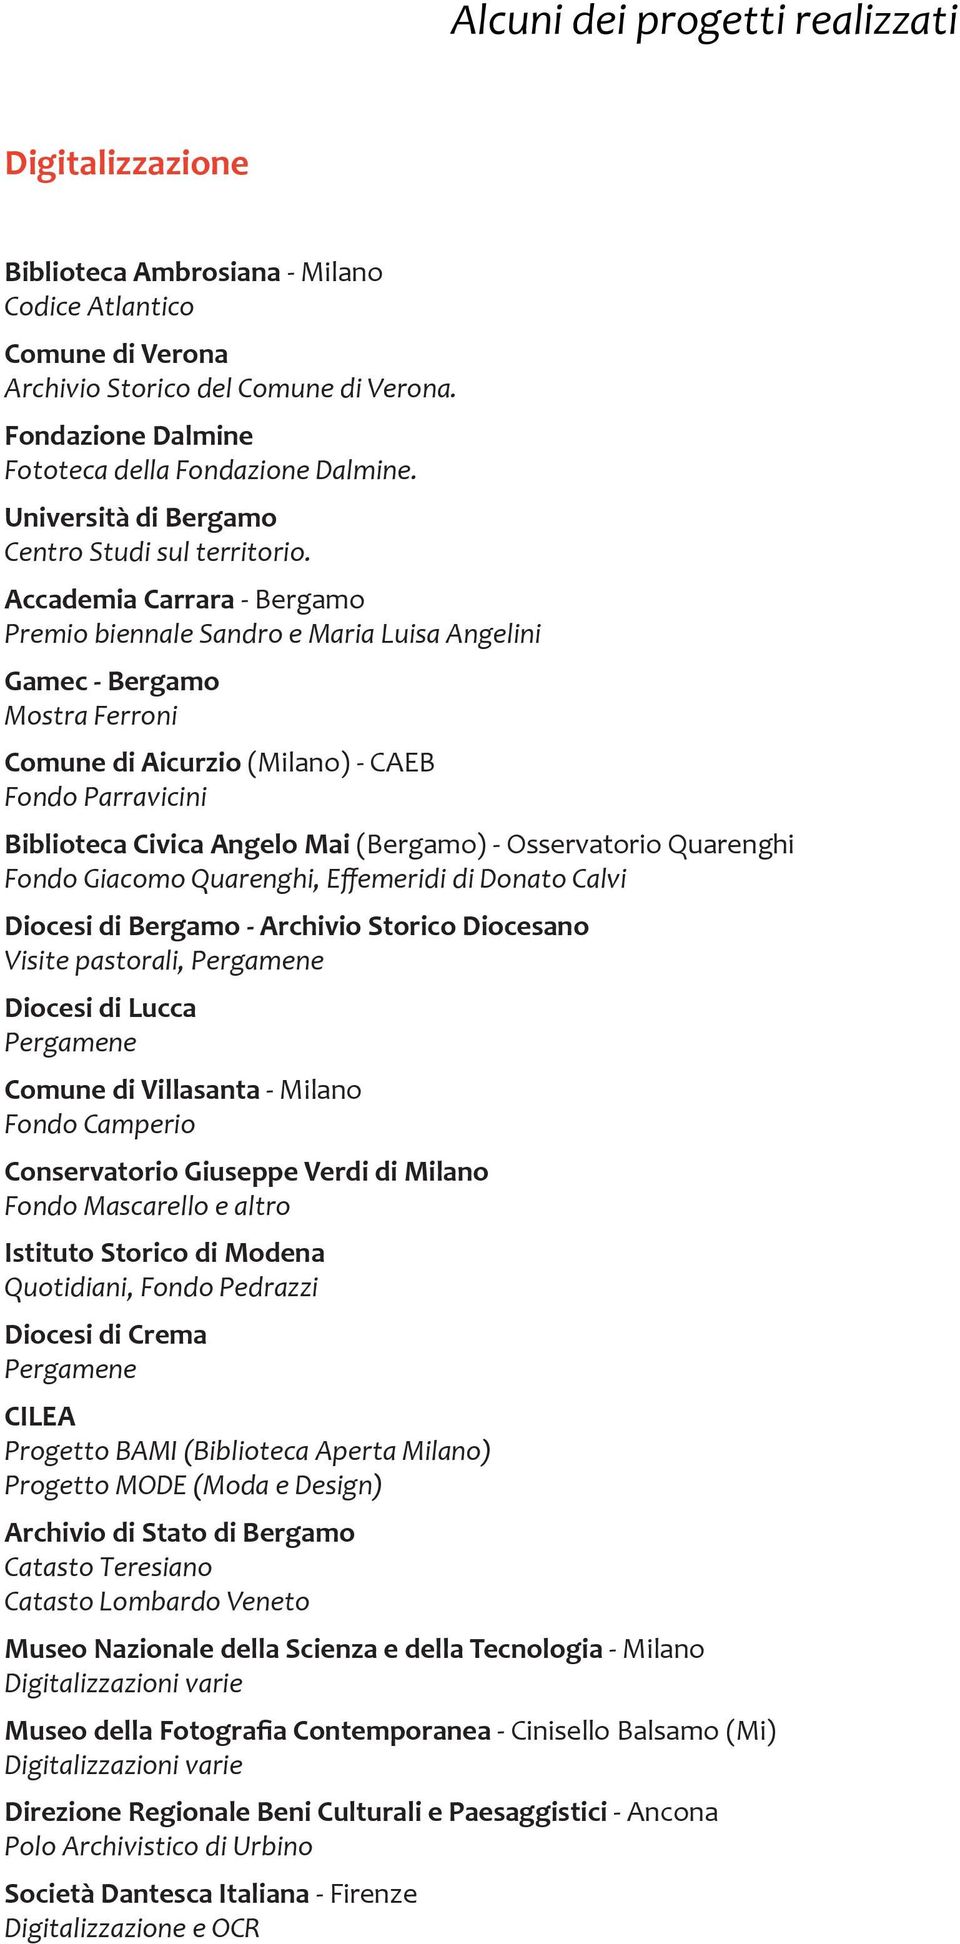 Accademia Carrara - Bergamo Premio biennale Sandro e Maria Luisa Angelini Gamec - Bergamo Mostra Ferroni Comune di Aicurzio (Milano) - CAEB Fondo Parravicini Biblioteca Civica Angelo Mai (Bergamo) -